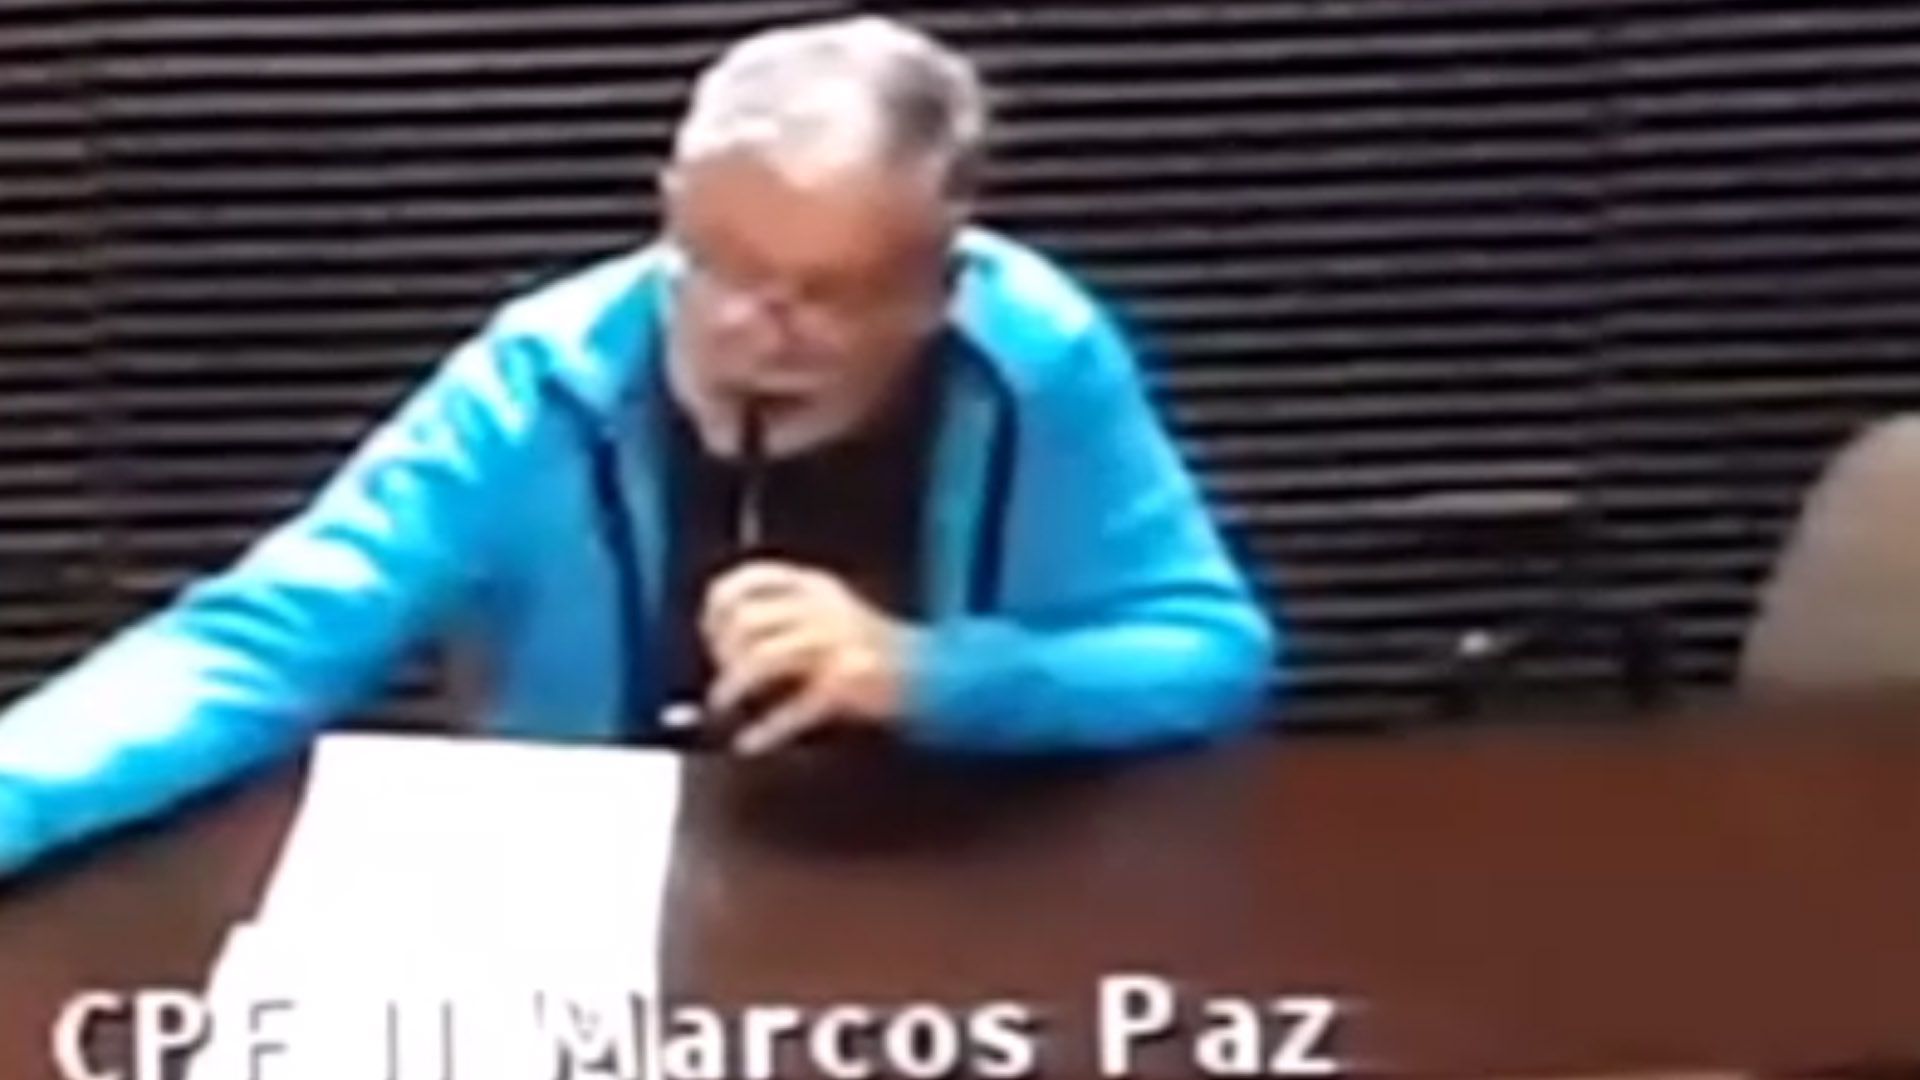 De Vido en una de sus videconferencias desde la cárcel de Marcos Paz